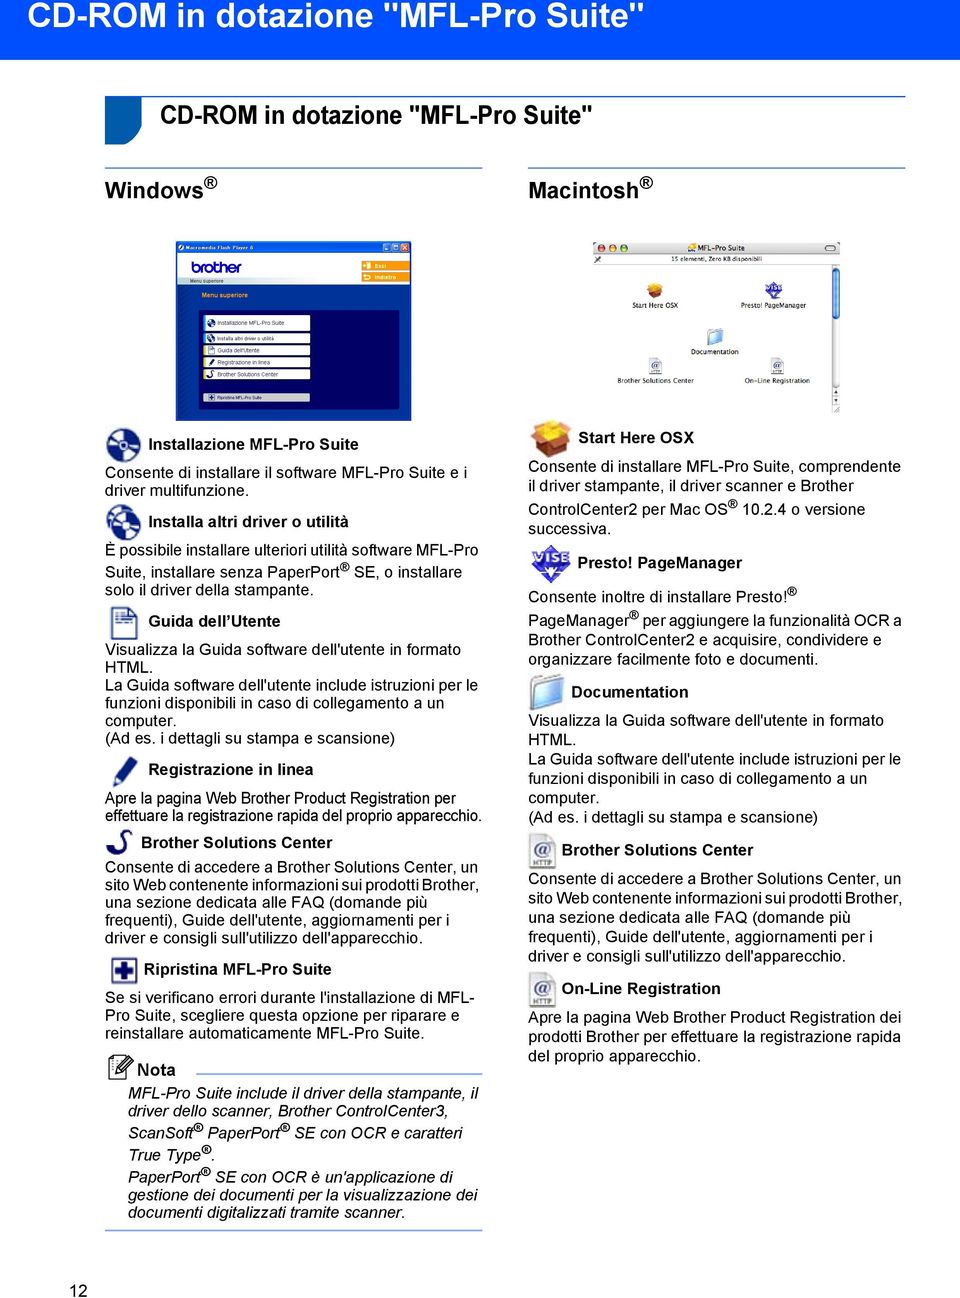 Guida dell Utente Visualizza la Guida software dell'utente in formato HTML. La Guida software dell'utente include istruzioni per le funzioni disponibili in caso di collegamento a un computer. (Ad es.